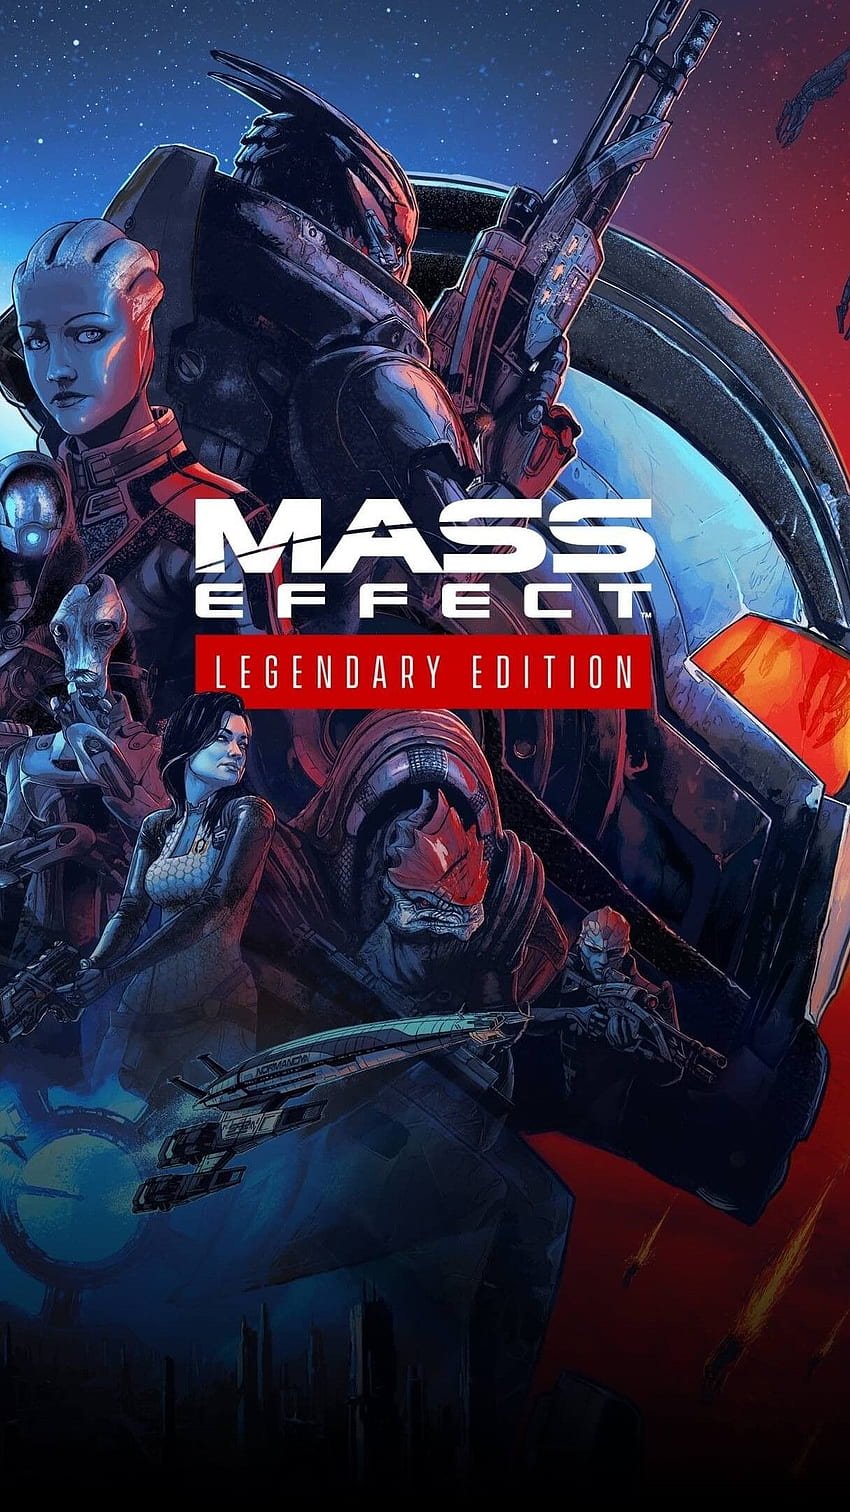 Mass Effect Legendary Edition Phone - For Tech, Mass Effect: Legendary Edition HD phone wallpaper